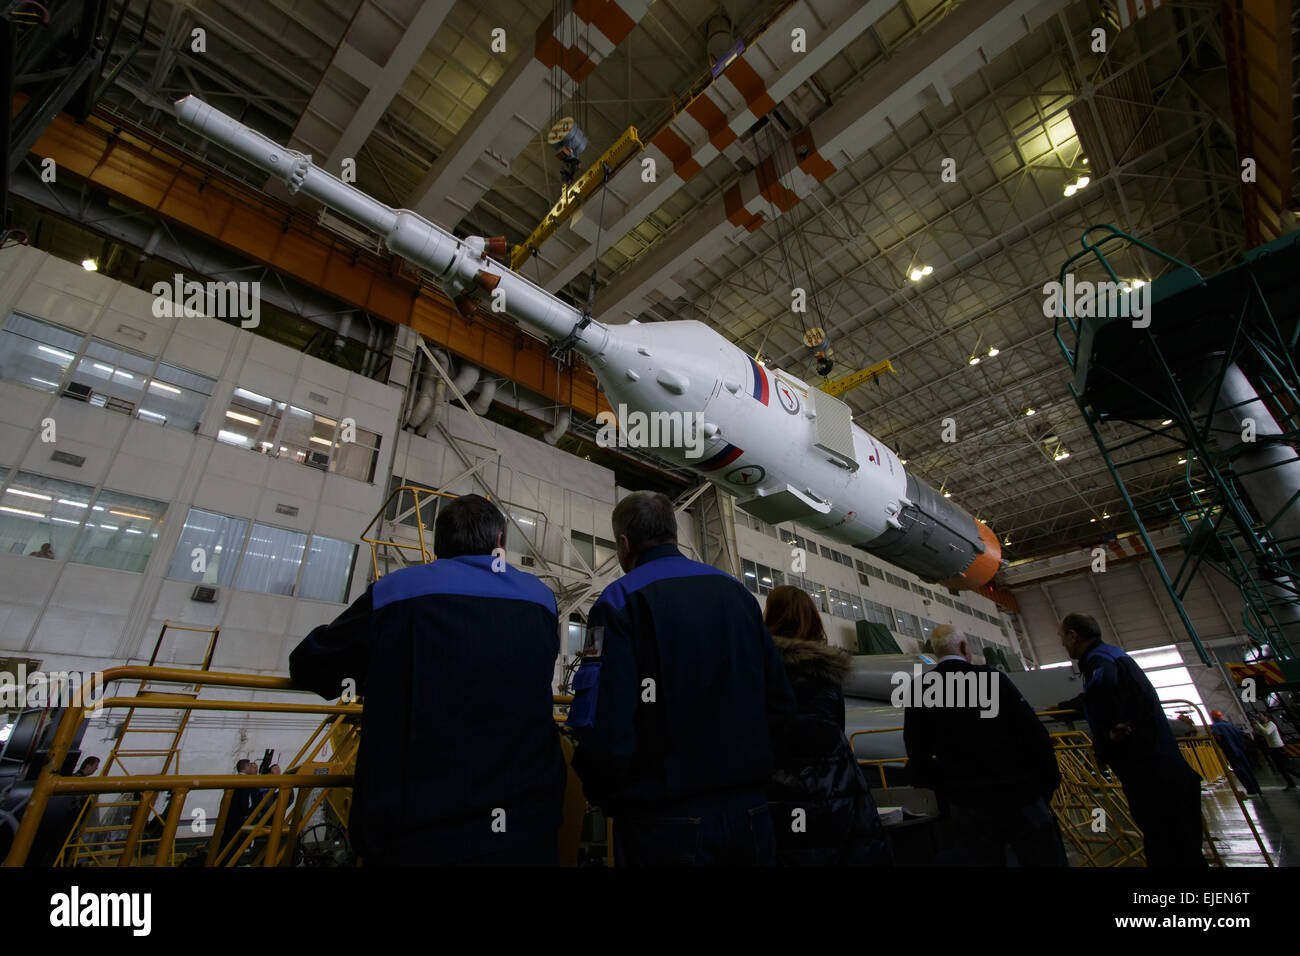 Il Soyuz TMA-16M veicolo spaziale è assemblato in preparazione per essere arrotolato al launch pad al cosmodromo di Baikonur Marzo 24, 2015 in Kazakistan. Lancio del razzo Soyuz è prevista per il mese di marzo 28 e porterà Expedition 43 equipaggio alla Stazione spaziale internazionale. Foto Stock